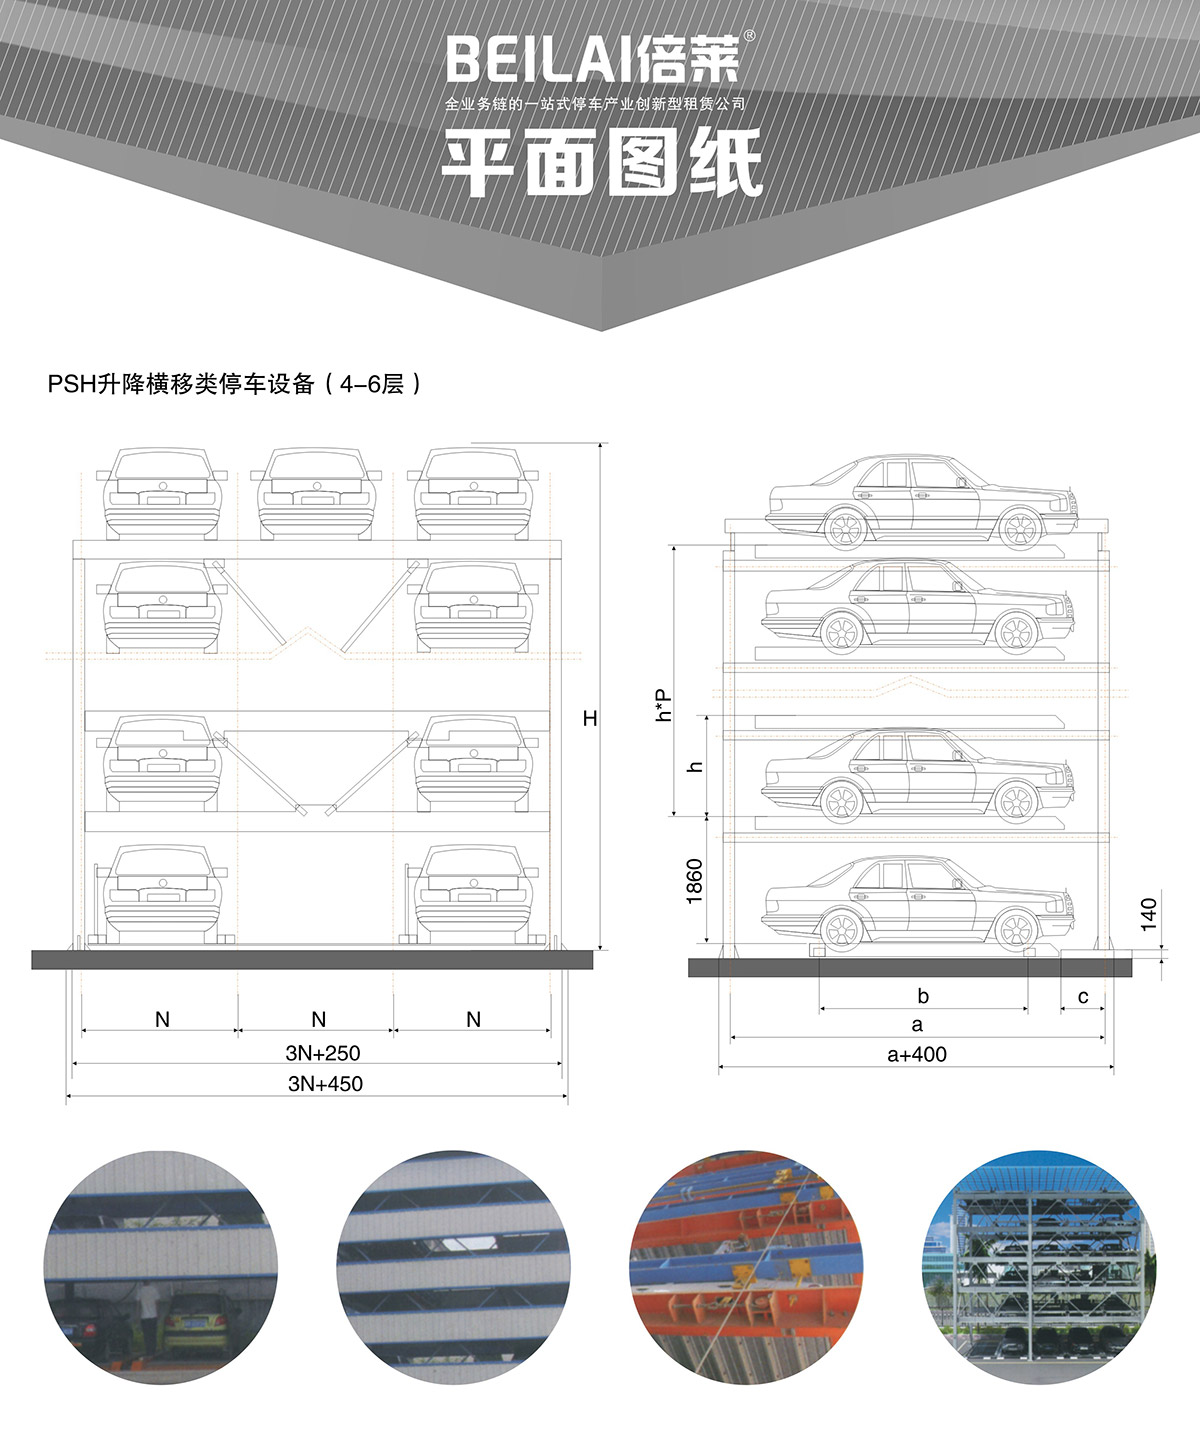 贵州四至六层PSH4-6升降横移类机械式立体停车设备平面图纸.jpg